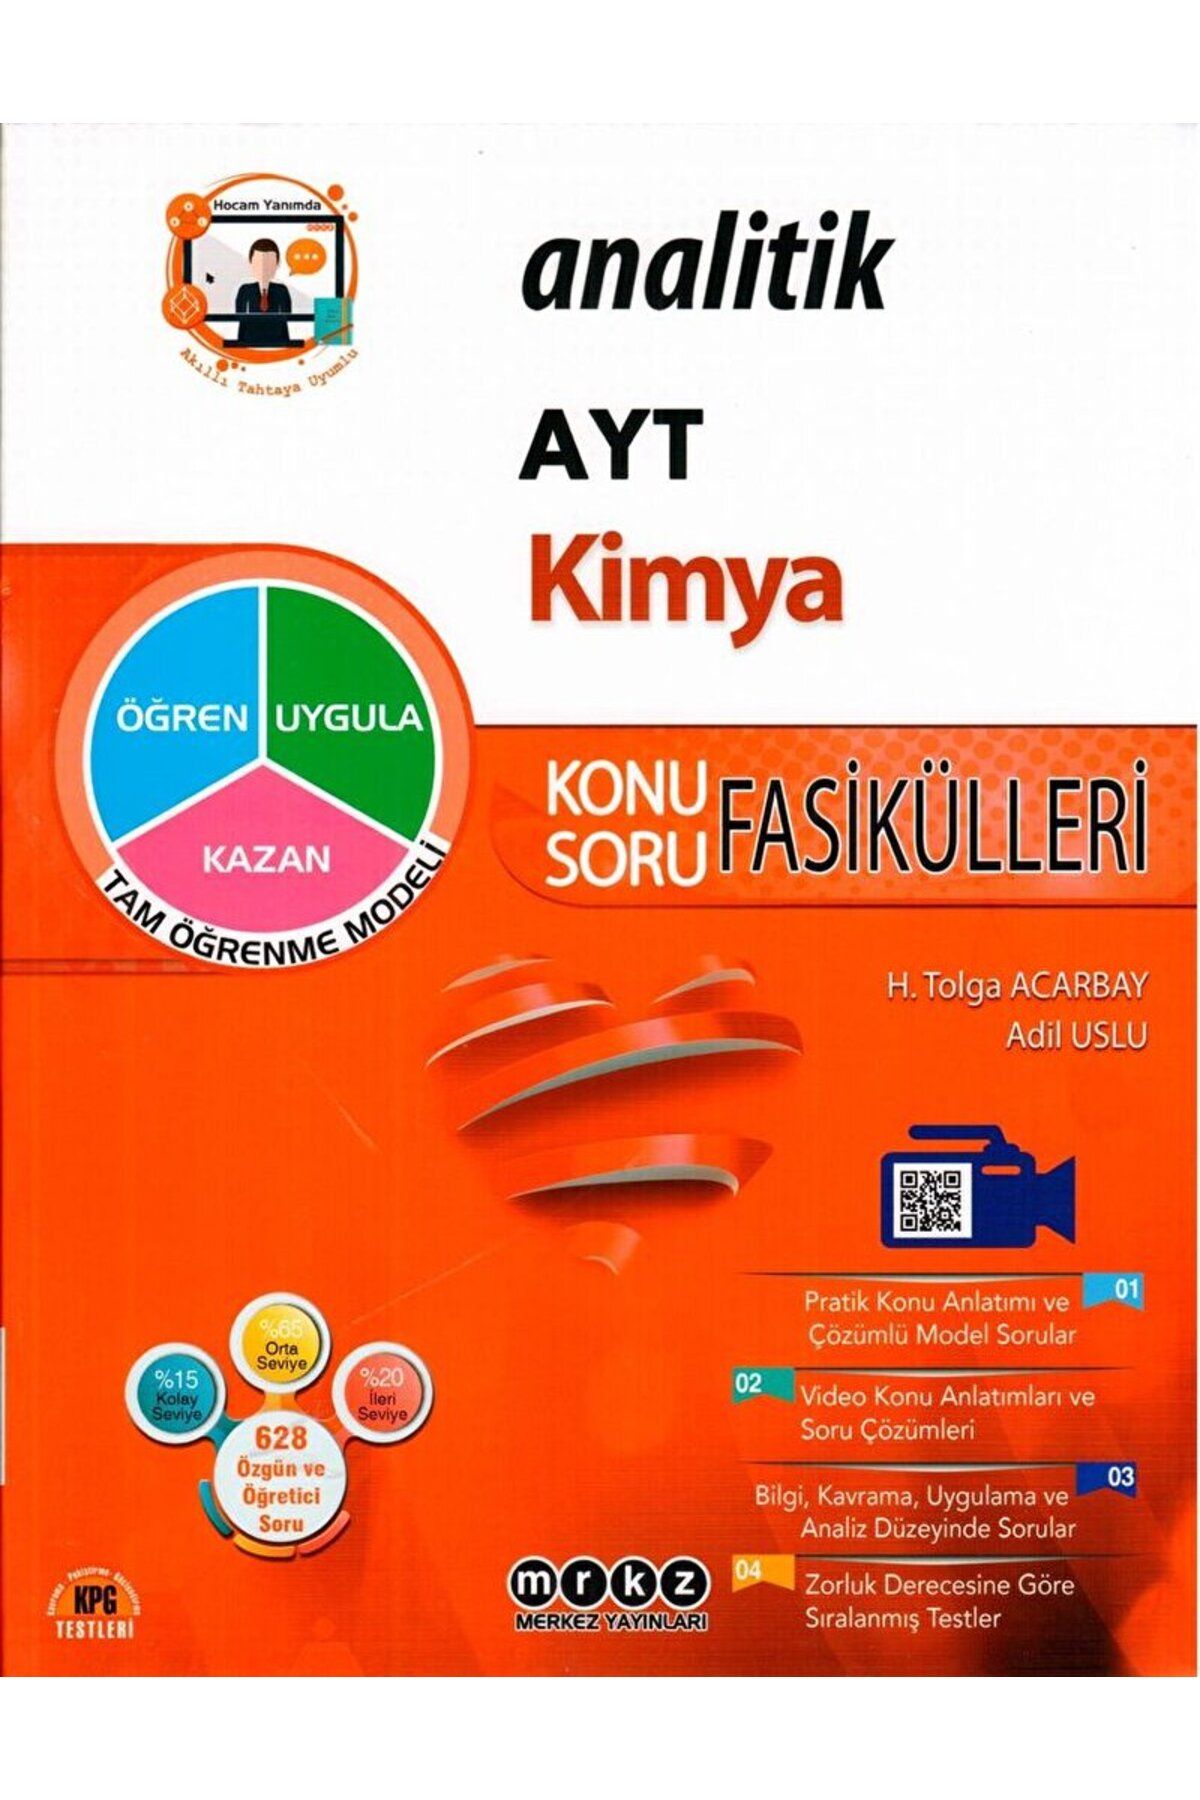 Merkez Yayınları AYT Kimya Analitik Konu Soru Fasikülleri / H. Tolga Acarbay / Merkez Yayınları / 9786057952790